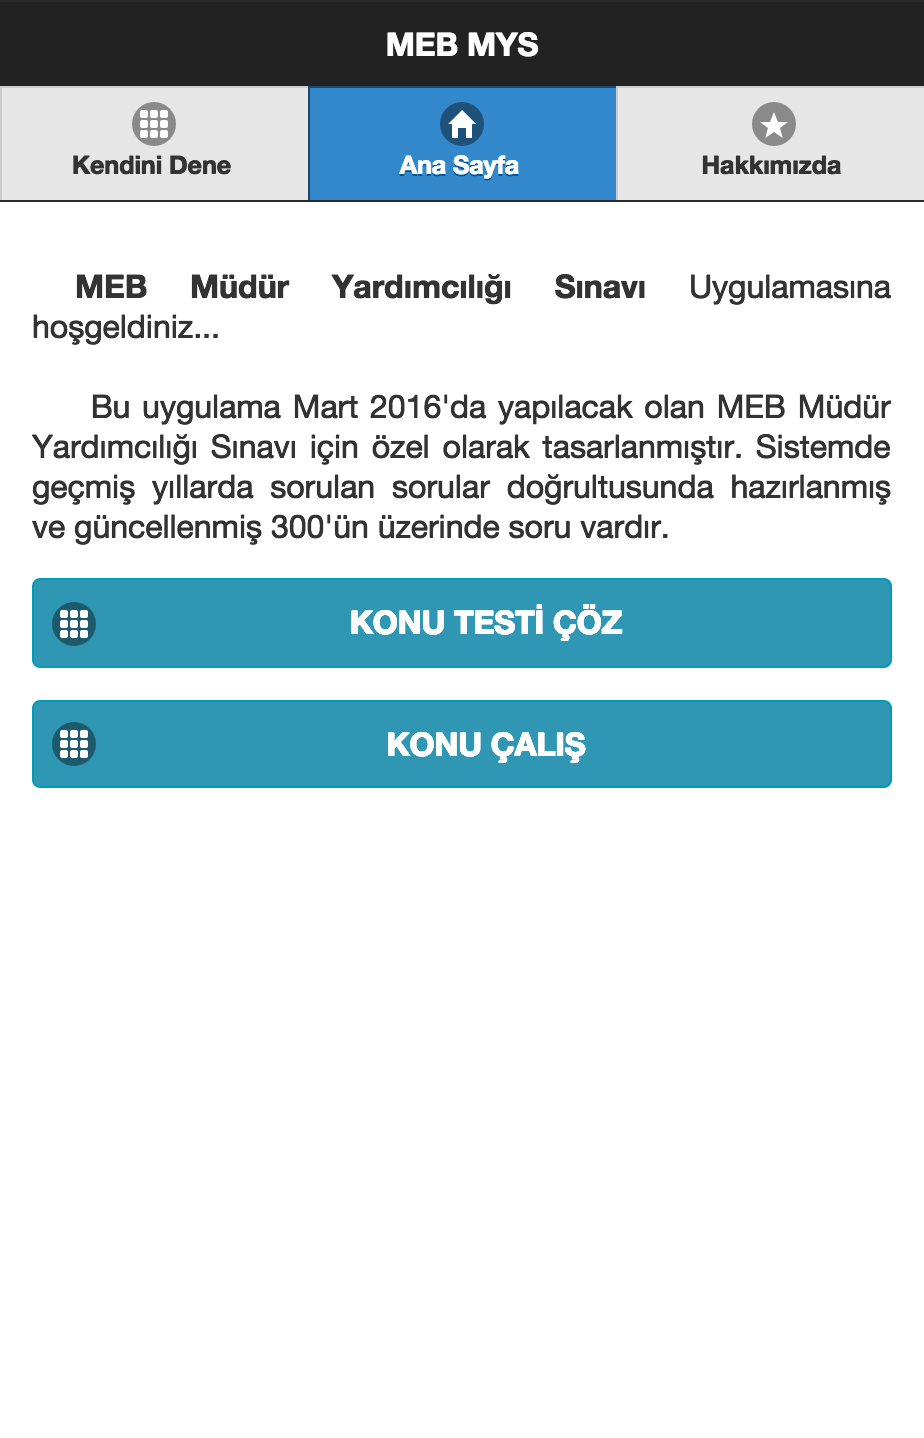 Android application MEB Müdür Yardımcılığı Sınavı screenshort